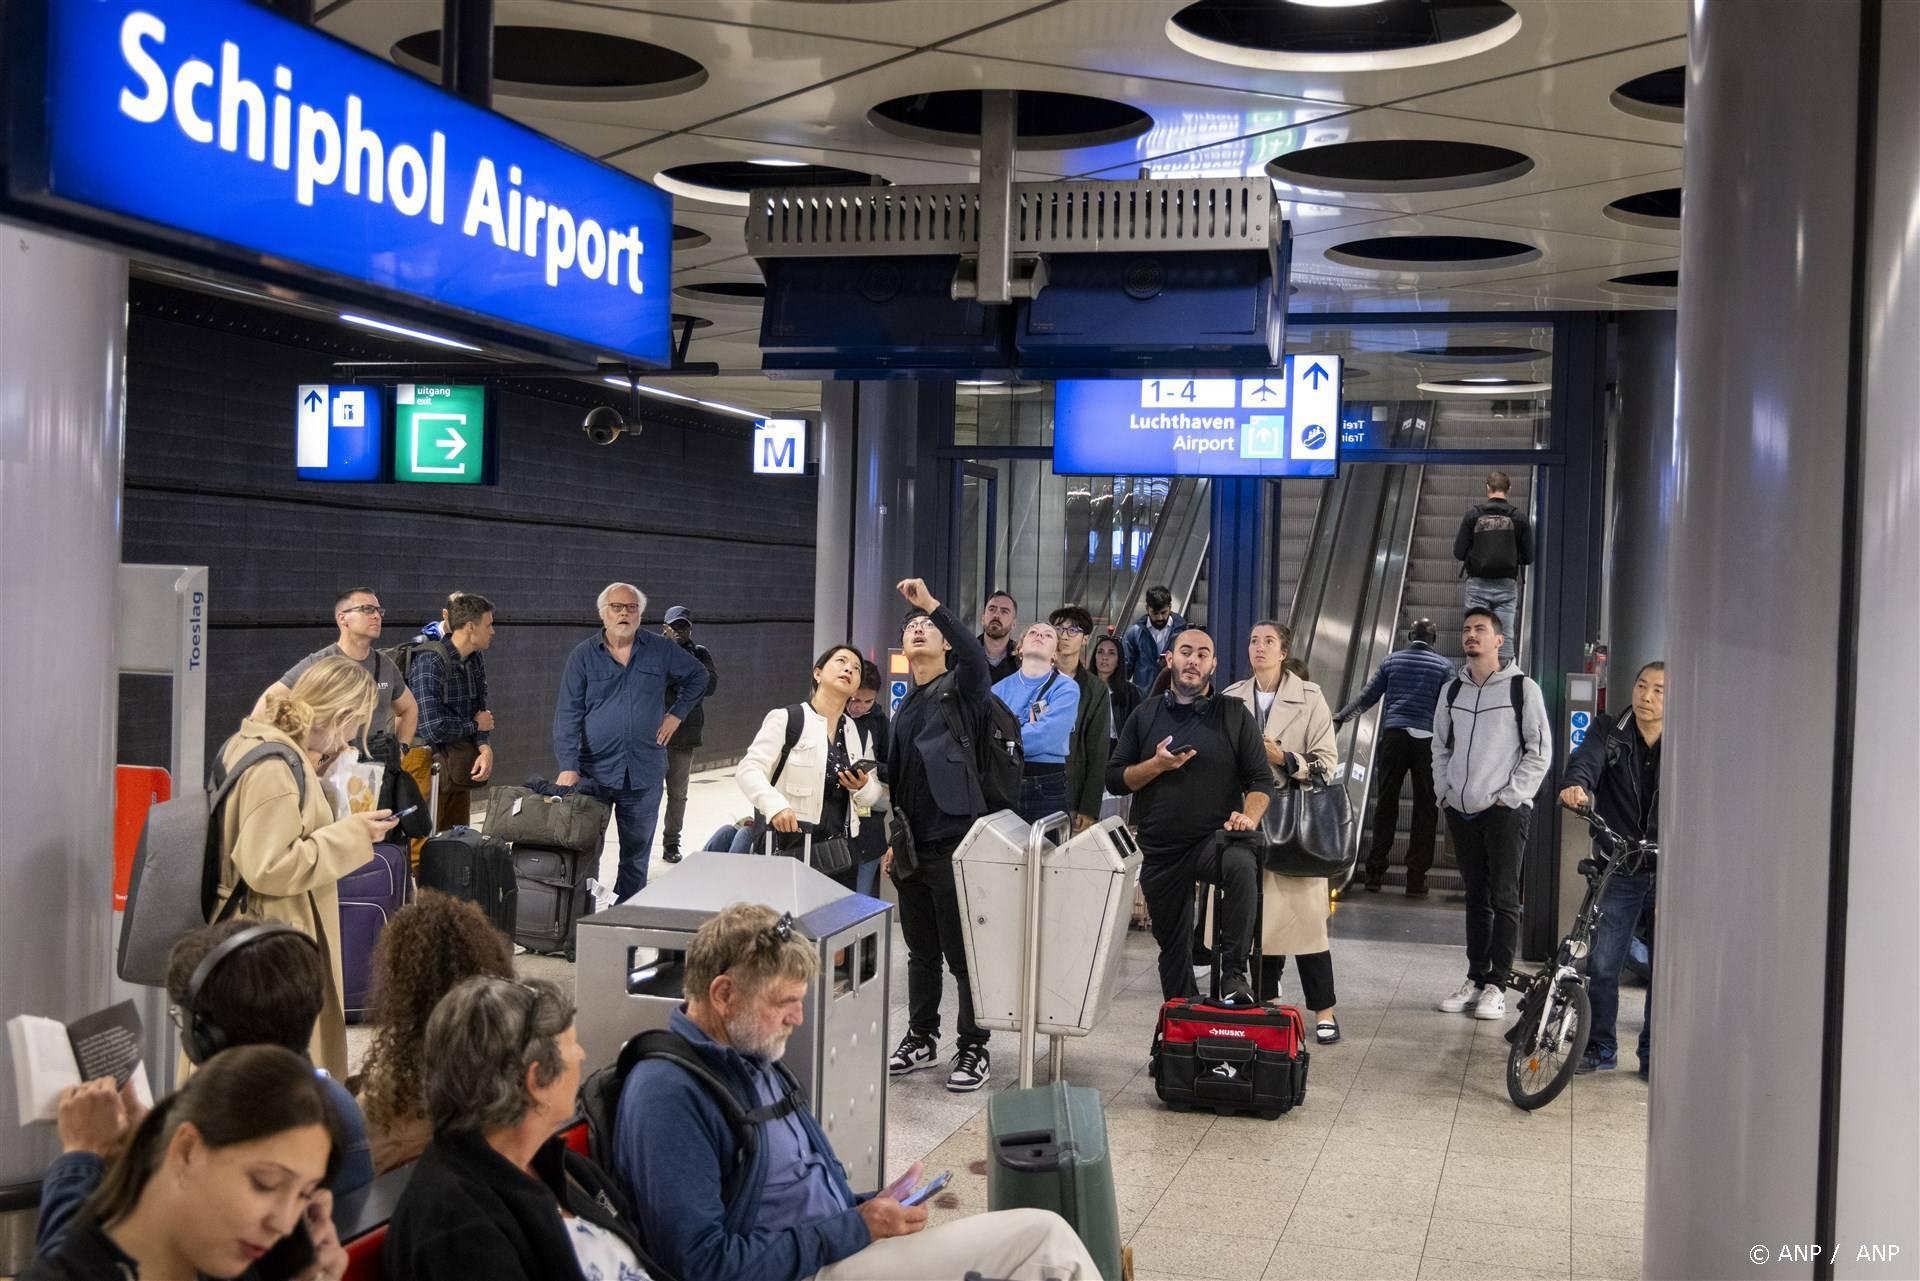 SCHIPHOL - Gestrande reizigers op de luchthaven Schiphol. Vanwege een 